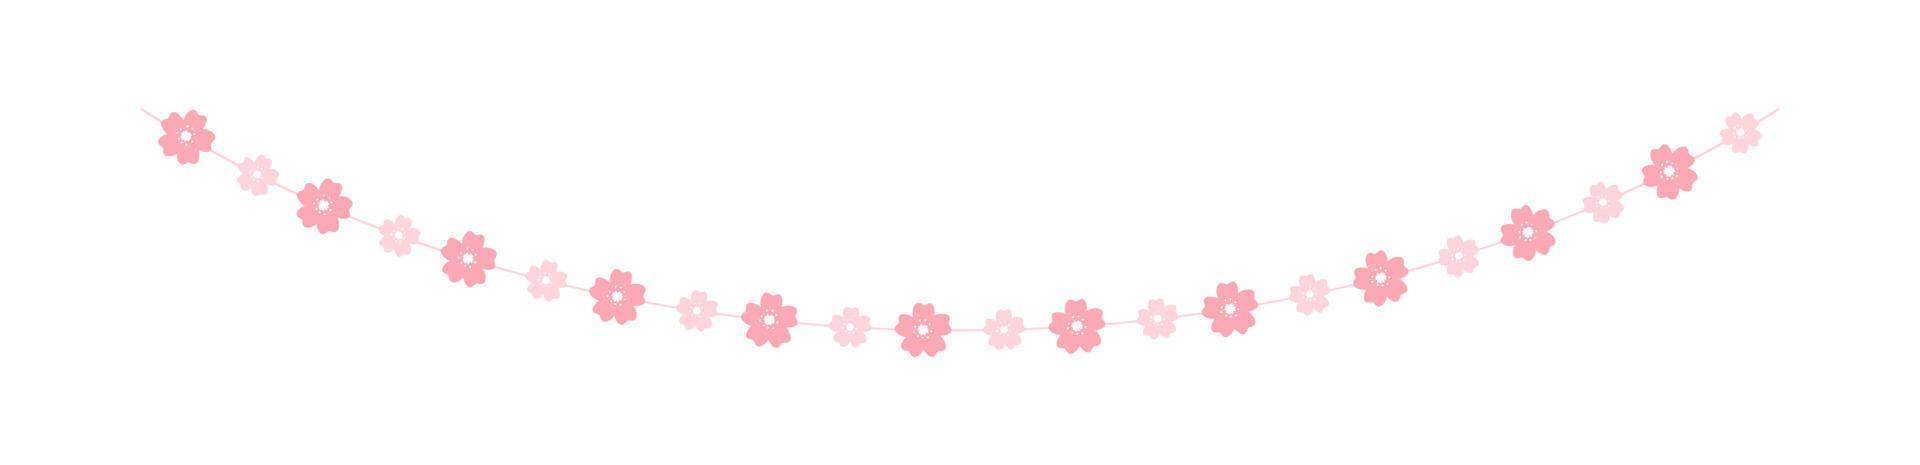 kirschblütengirlande, niedliche florale ammerfeder-designelemente vektor